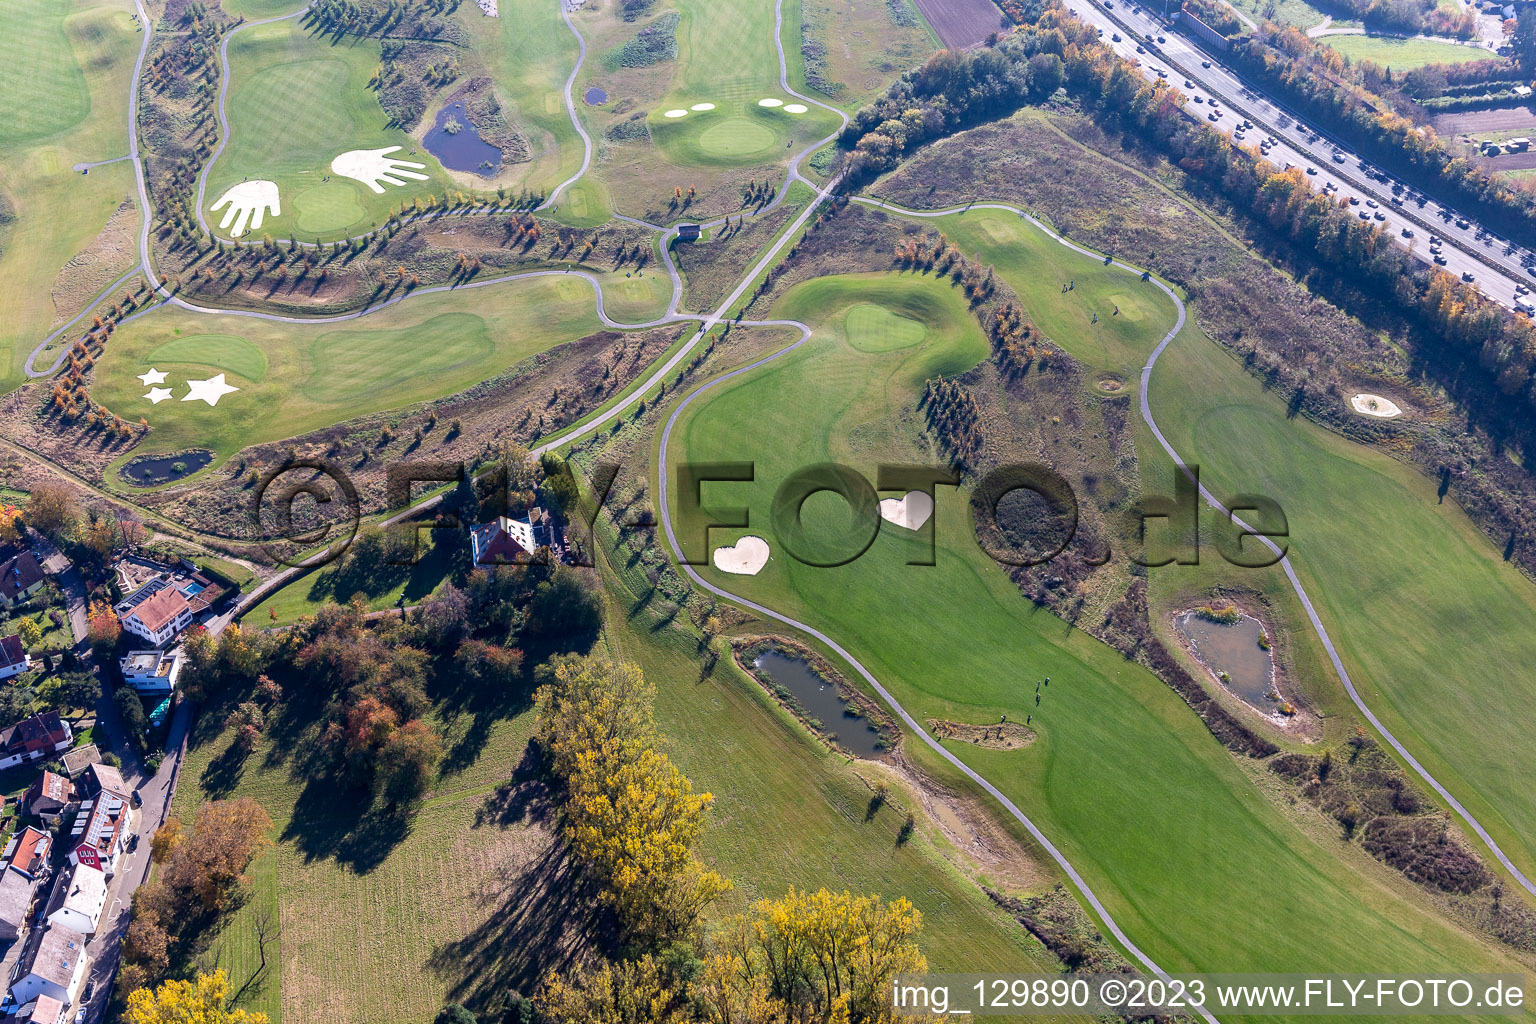 Schrägluftbild von Gelände des Golfplatz Golfpark Karlsruhe GOLF absolute in Karlsruhe im Ortsteil Hohenwettersbach im Bundesland Baden-Württemberg, Deutschland